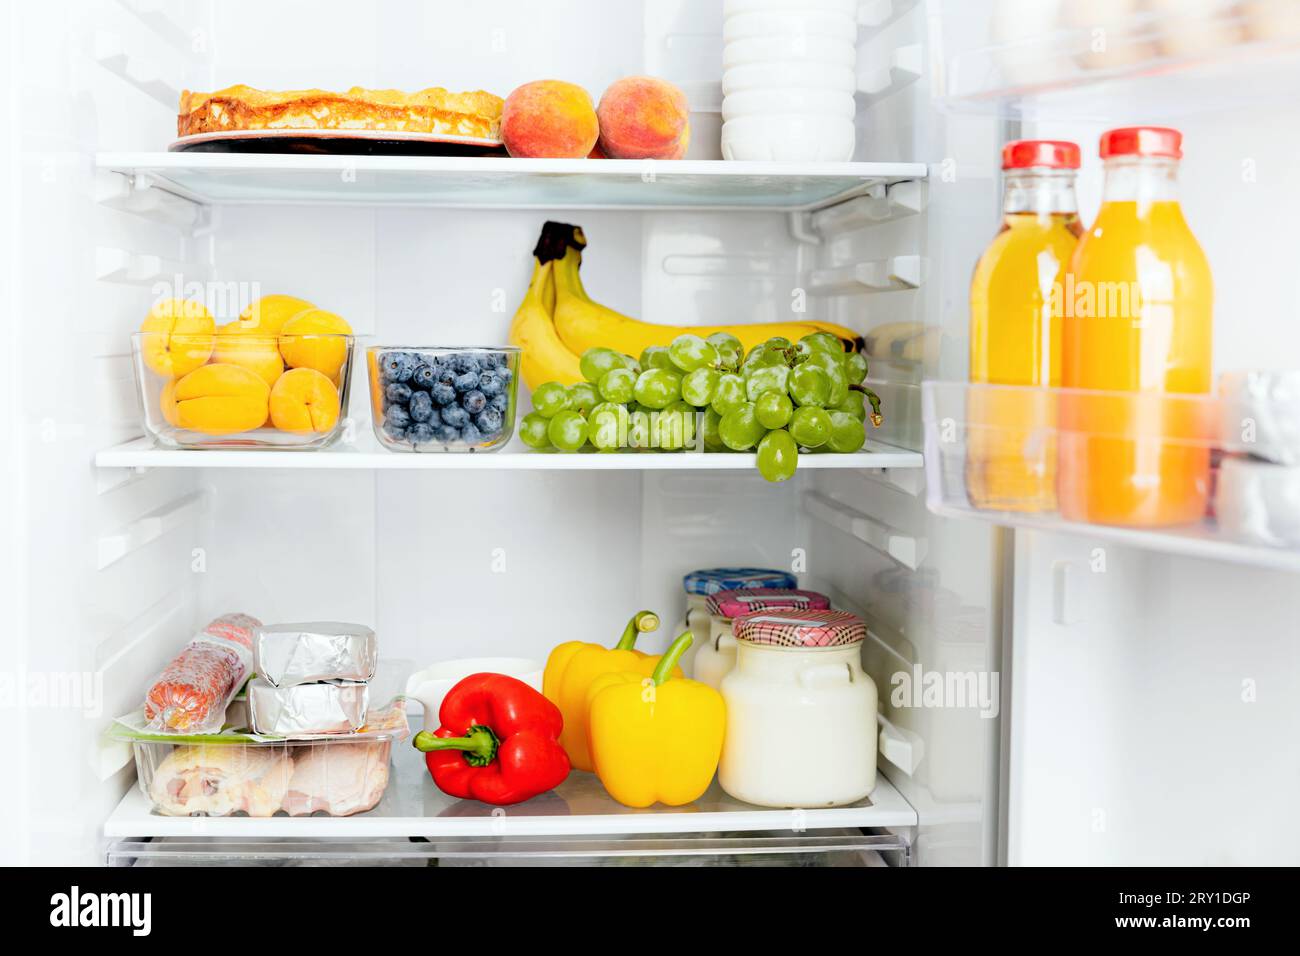 Vista frontale del frigorifero a due porte aperto o della porta del frigorifero riempito con frutta fresca, verdura, succo di frutta, pieno di cibi sani e ingredienti all'interno Foto Stock